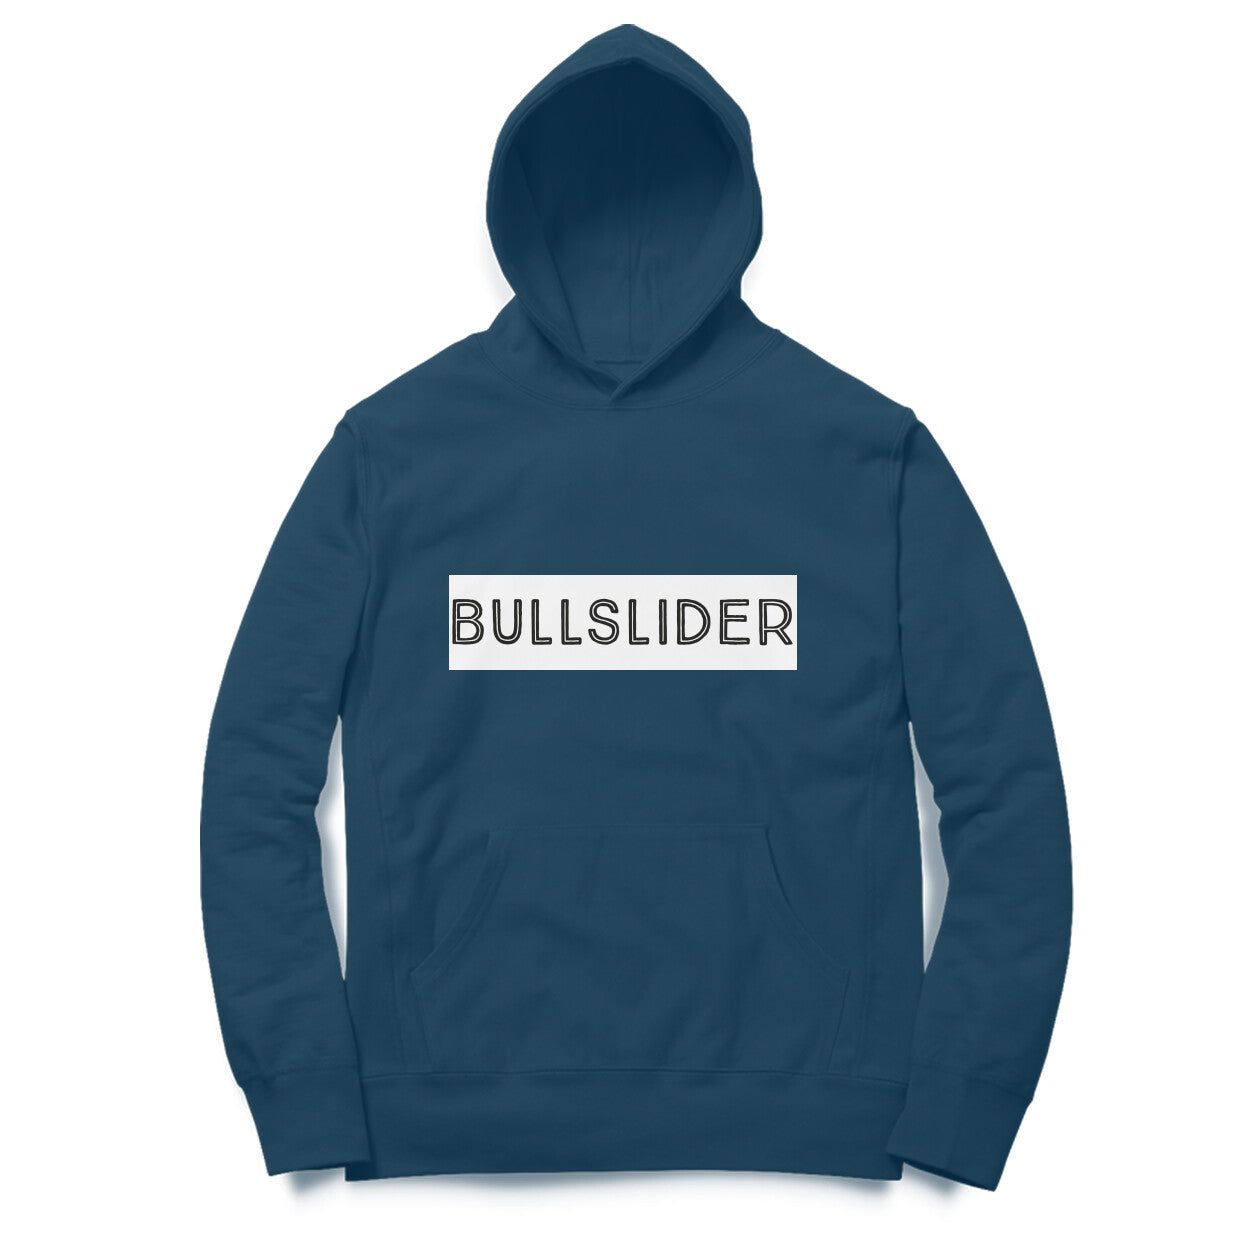 Men's printed Bullslider Hoodies